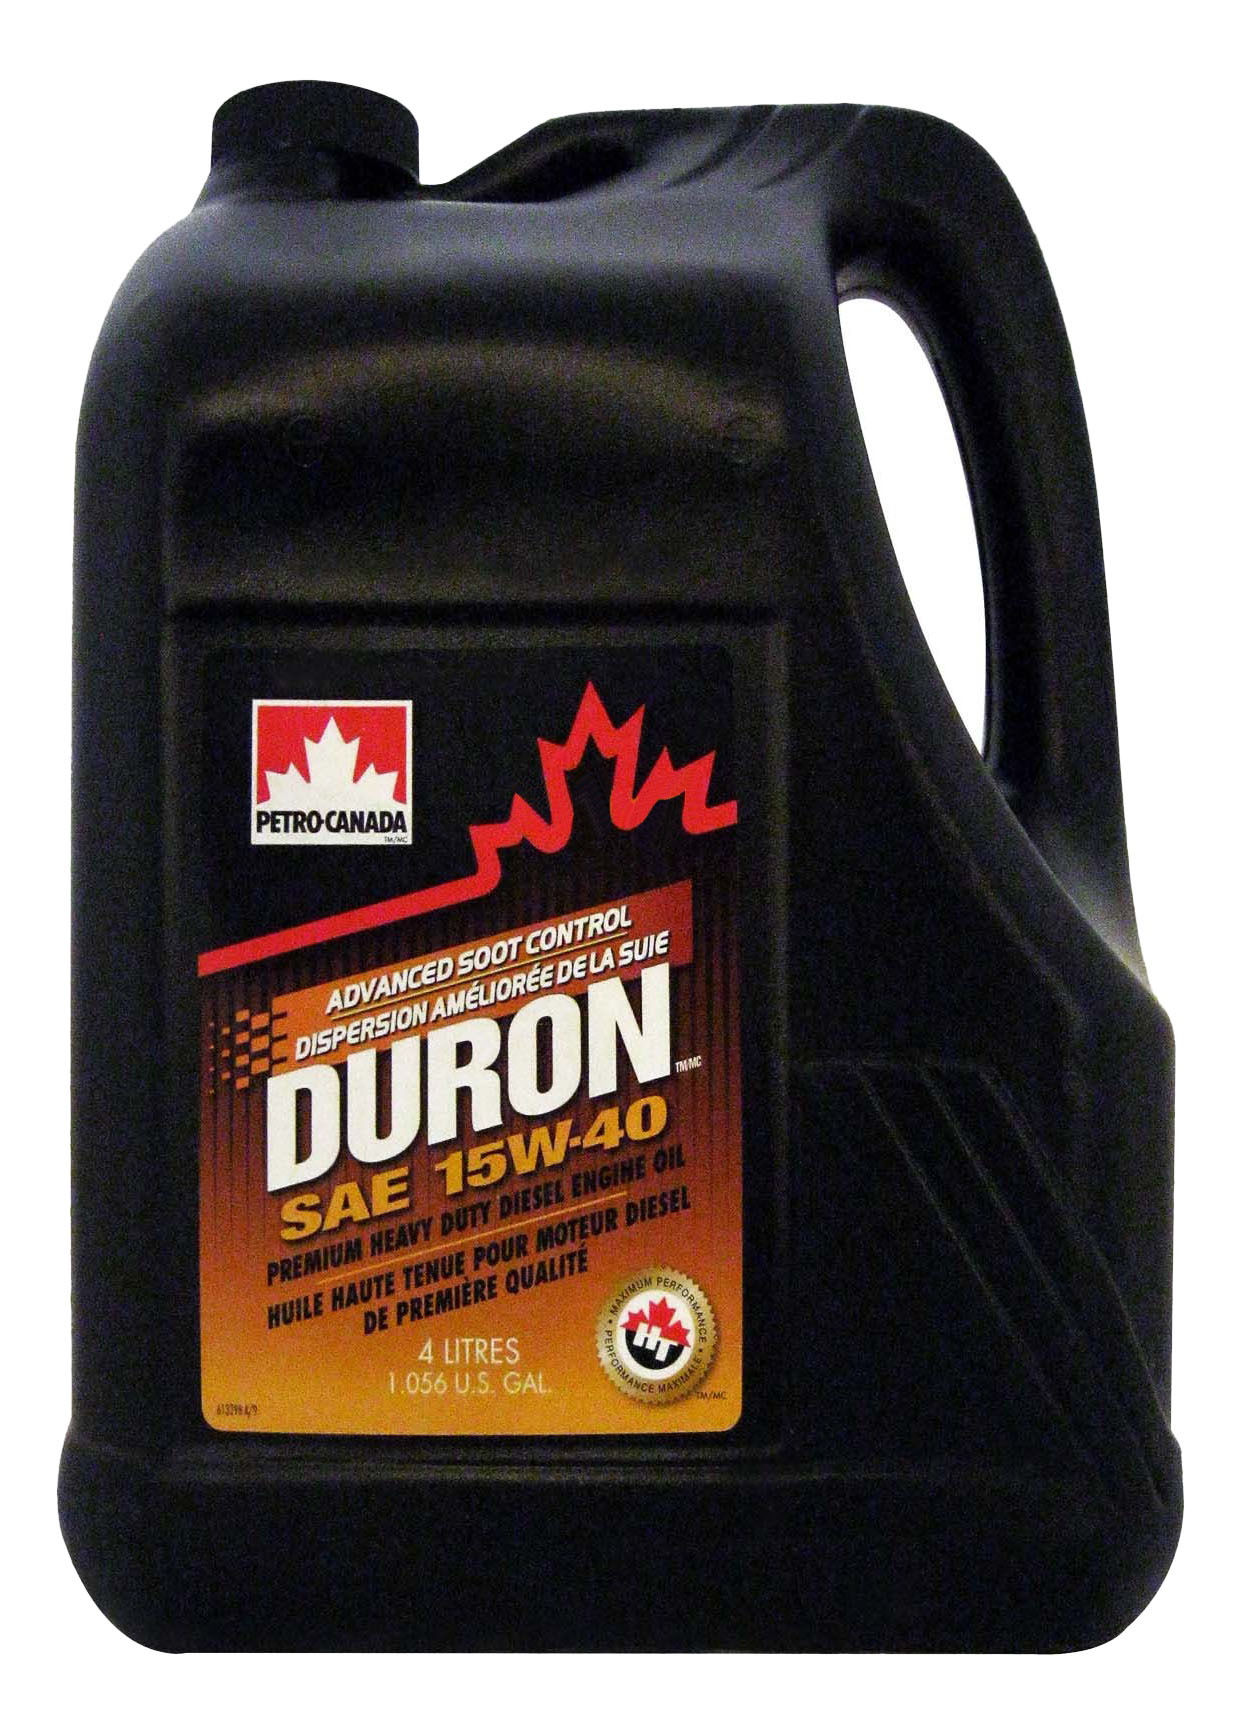 Duron Petro-Canada